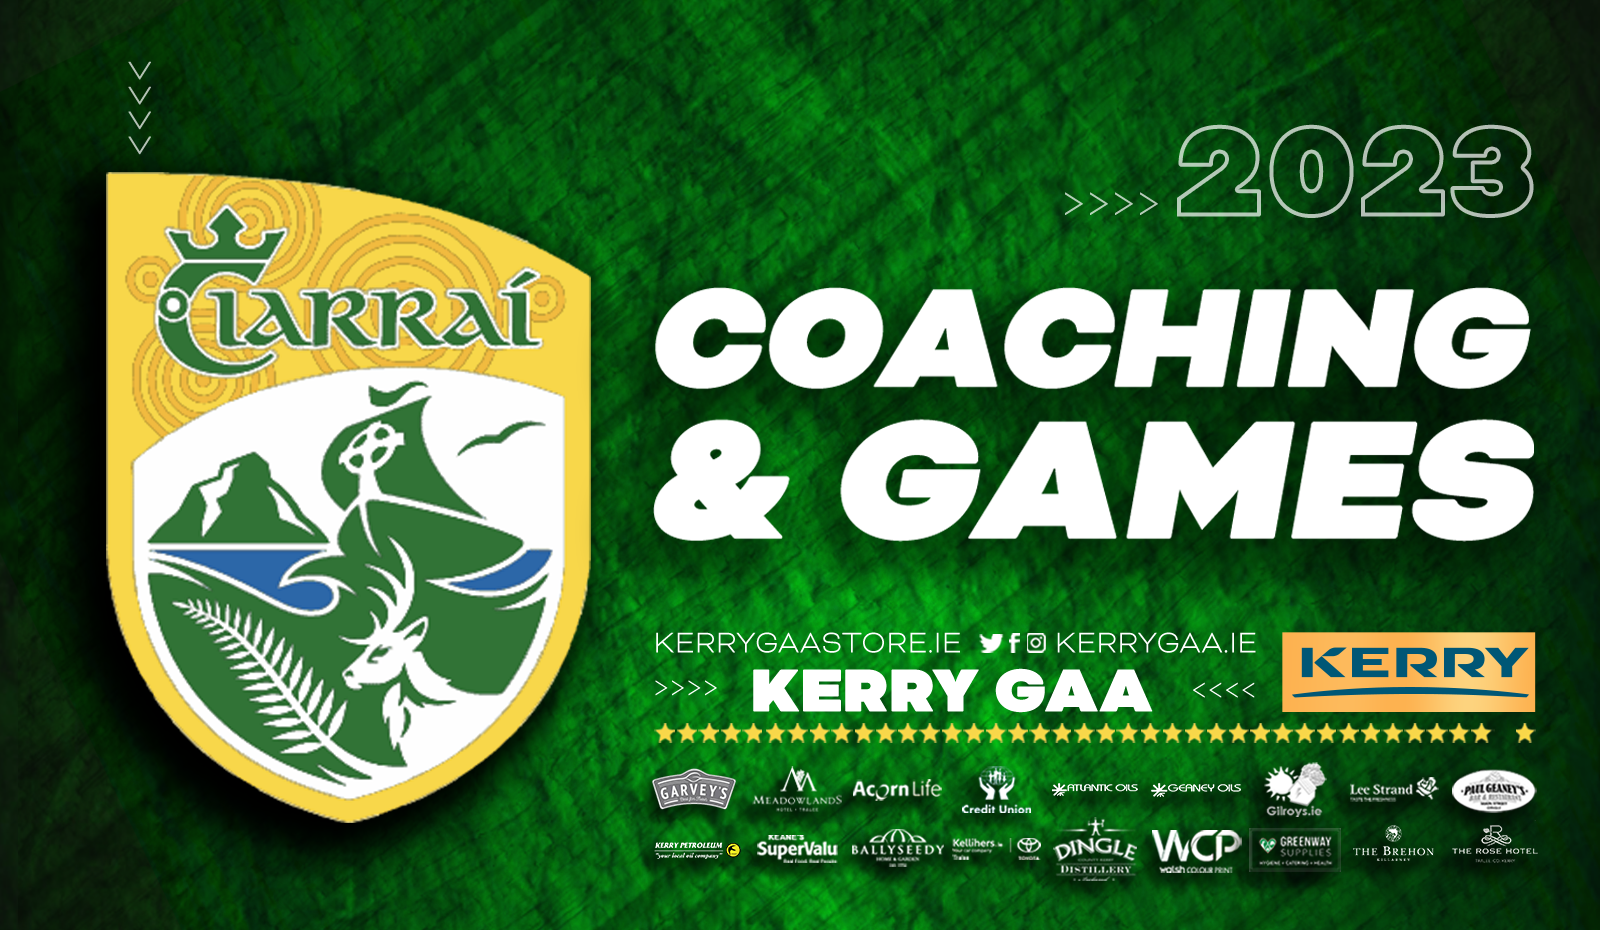 Kerry GAA Football Player Development Academy